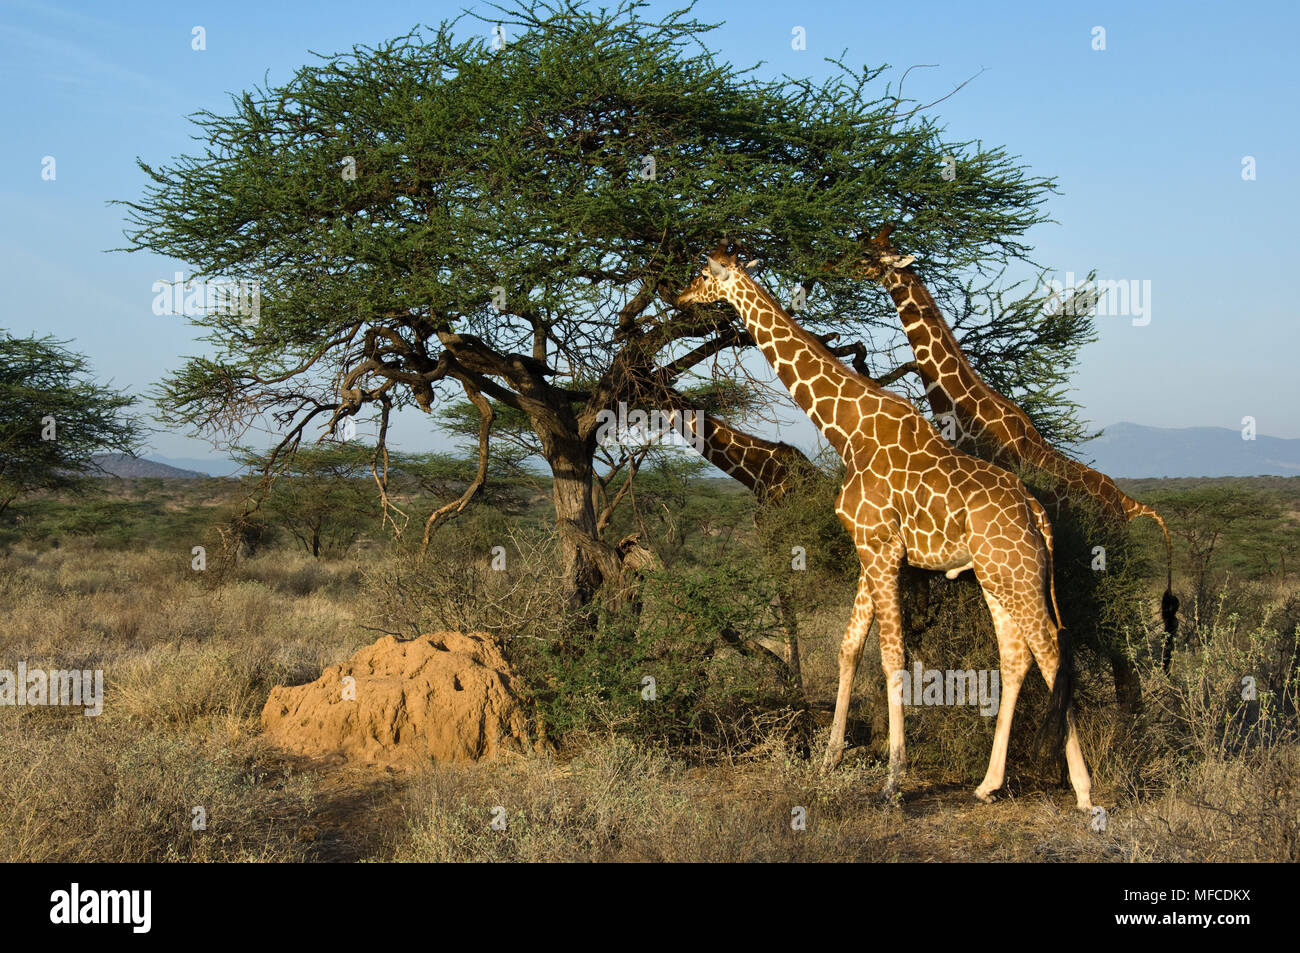 Reticulated giraffes eat leaves from an acacia tree, Giraffa reticulata; Samburu, Kenya Stock Photo